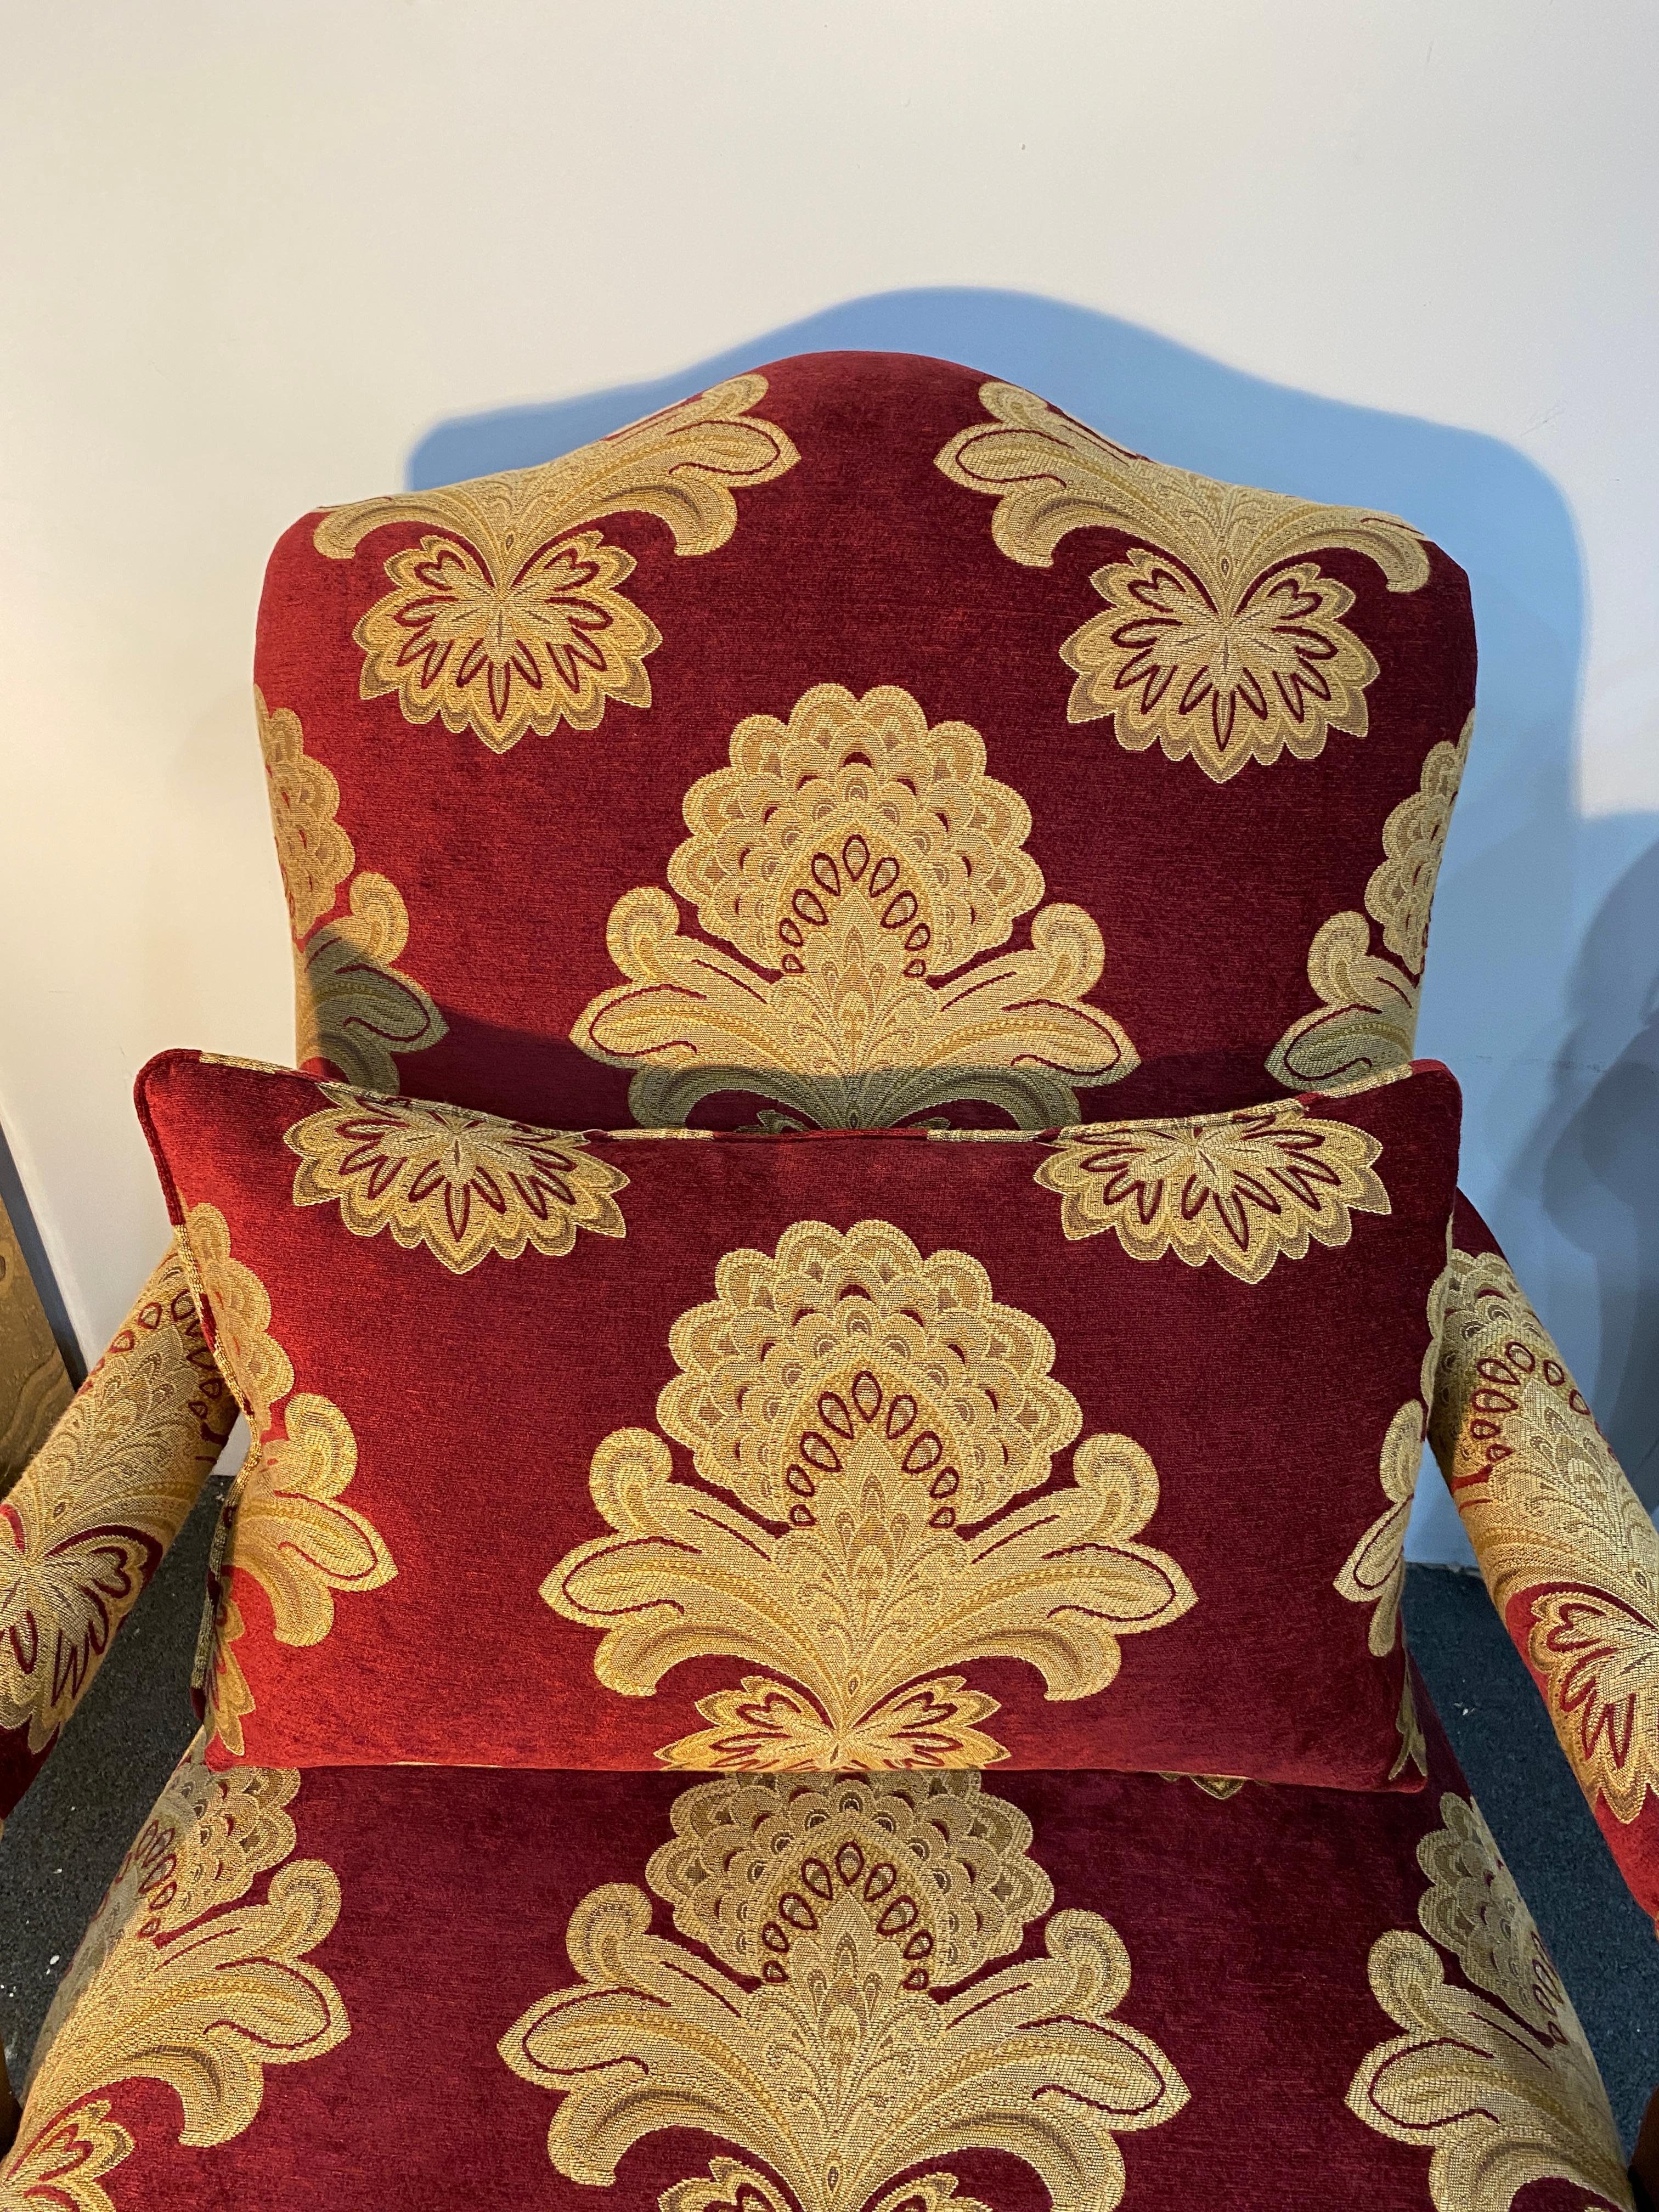 Superbe paire de fauteuils bergère ou chaises de salon de style Louis XV. Il présente de grands cadres sculptés dans le style et l'échelle d'une marquise bergère, avec des motifs néoclassiques décorant l'assise. Le dossier s'incurve gracieusement